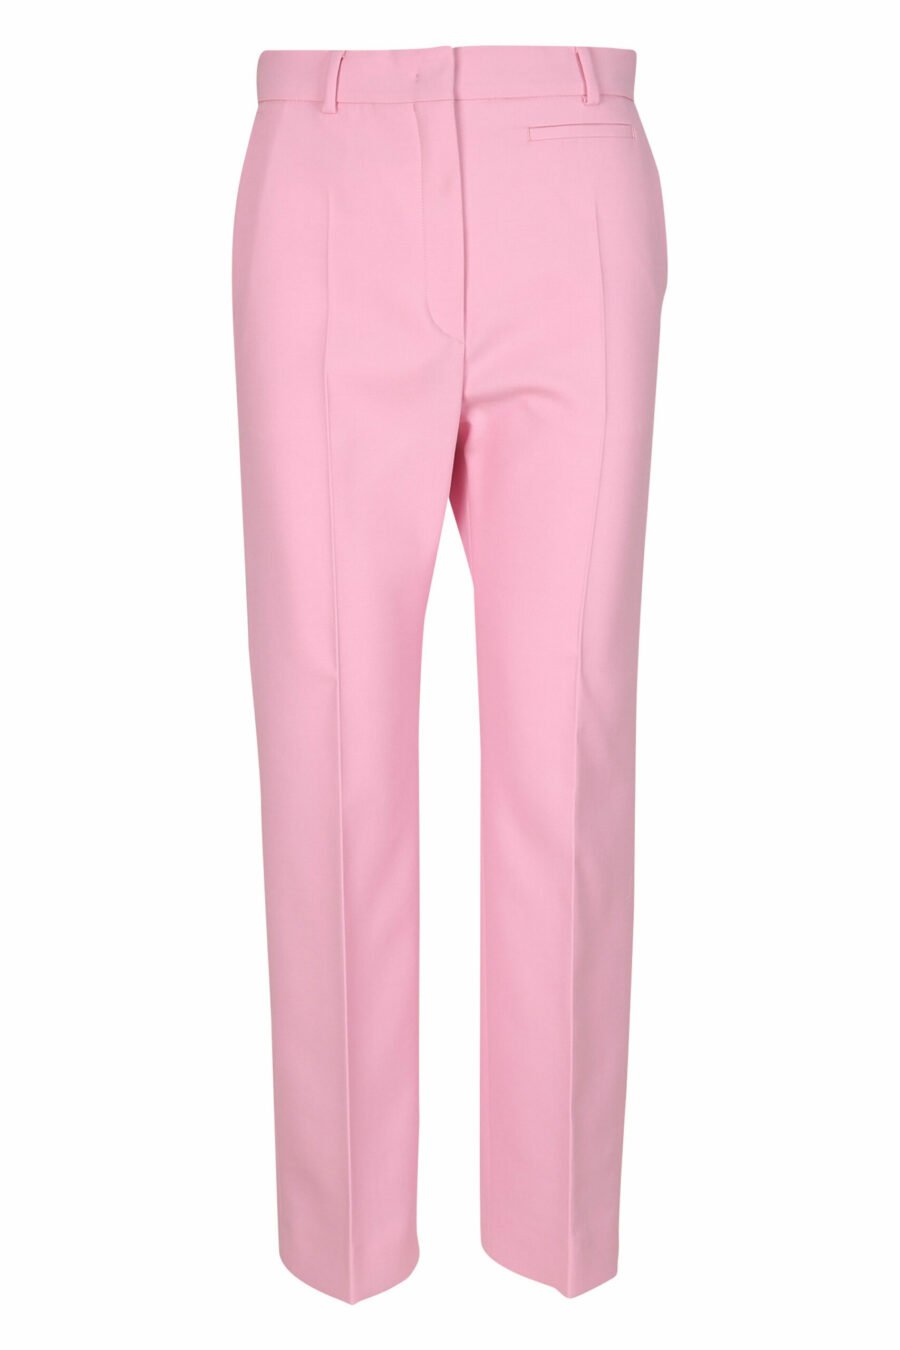 Pantalon large de couleur rose - 21310741060053